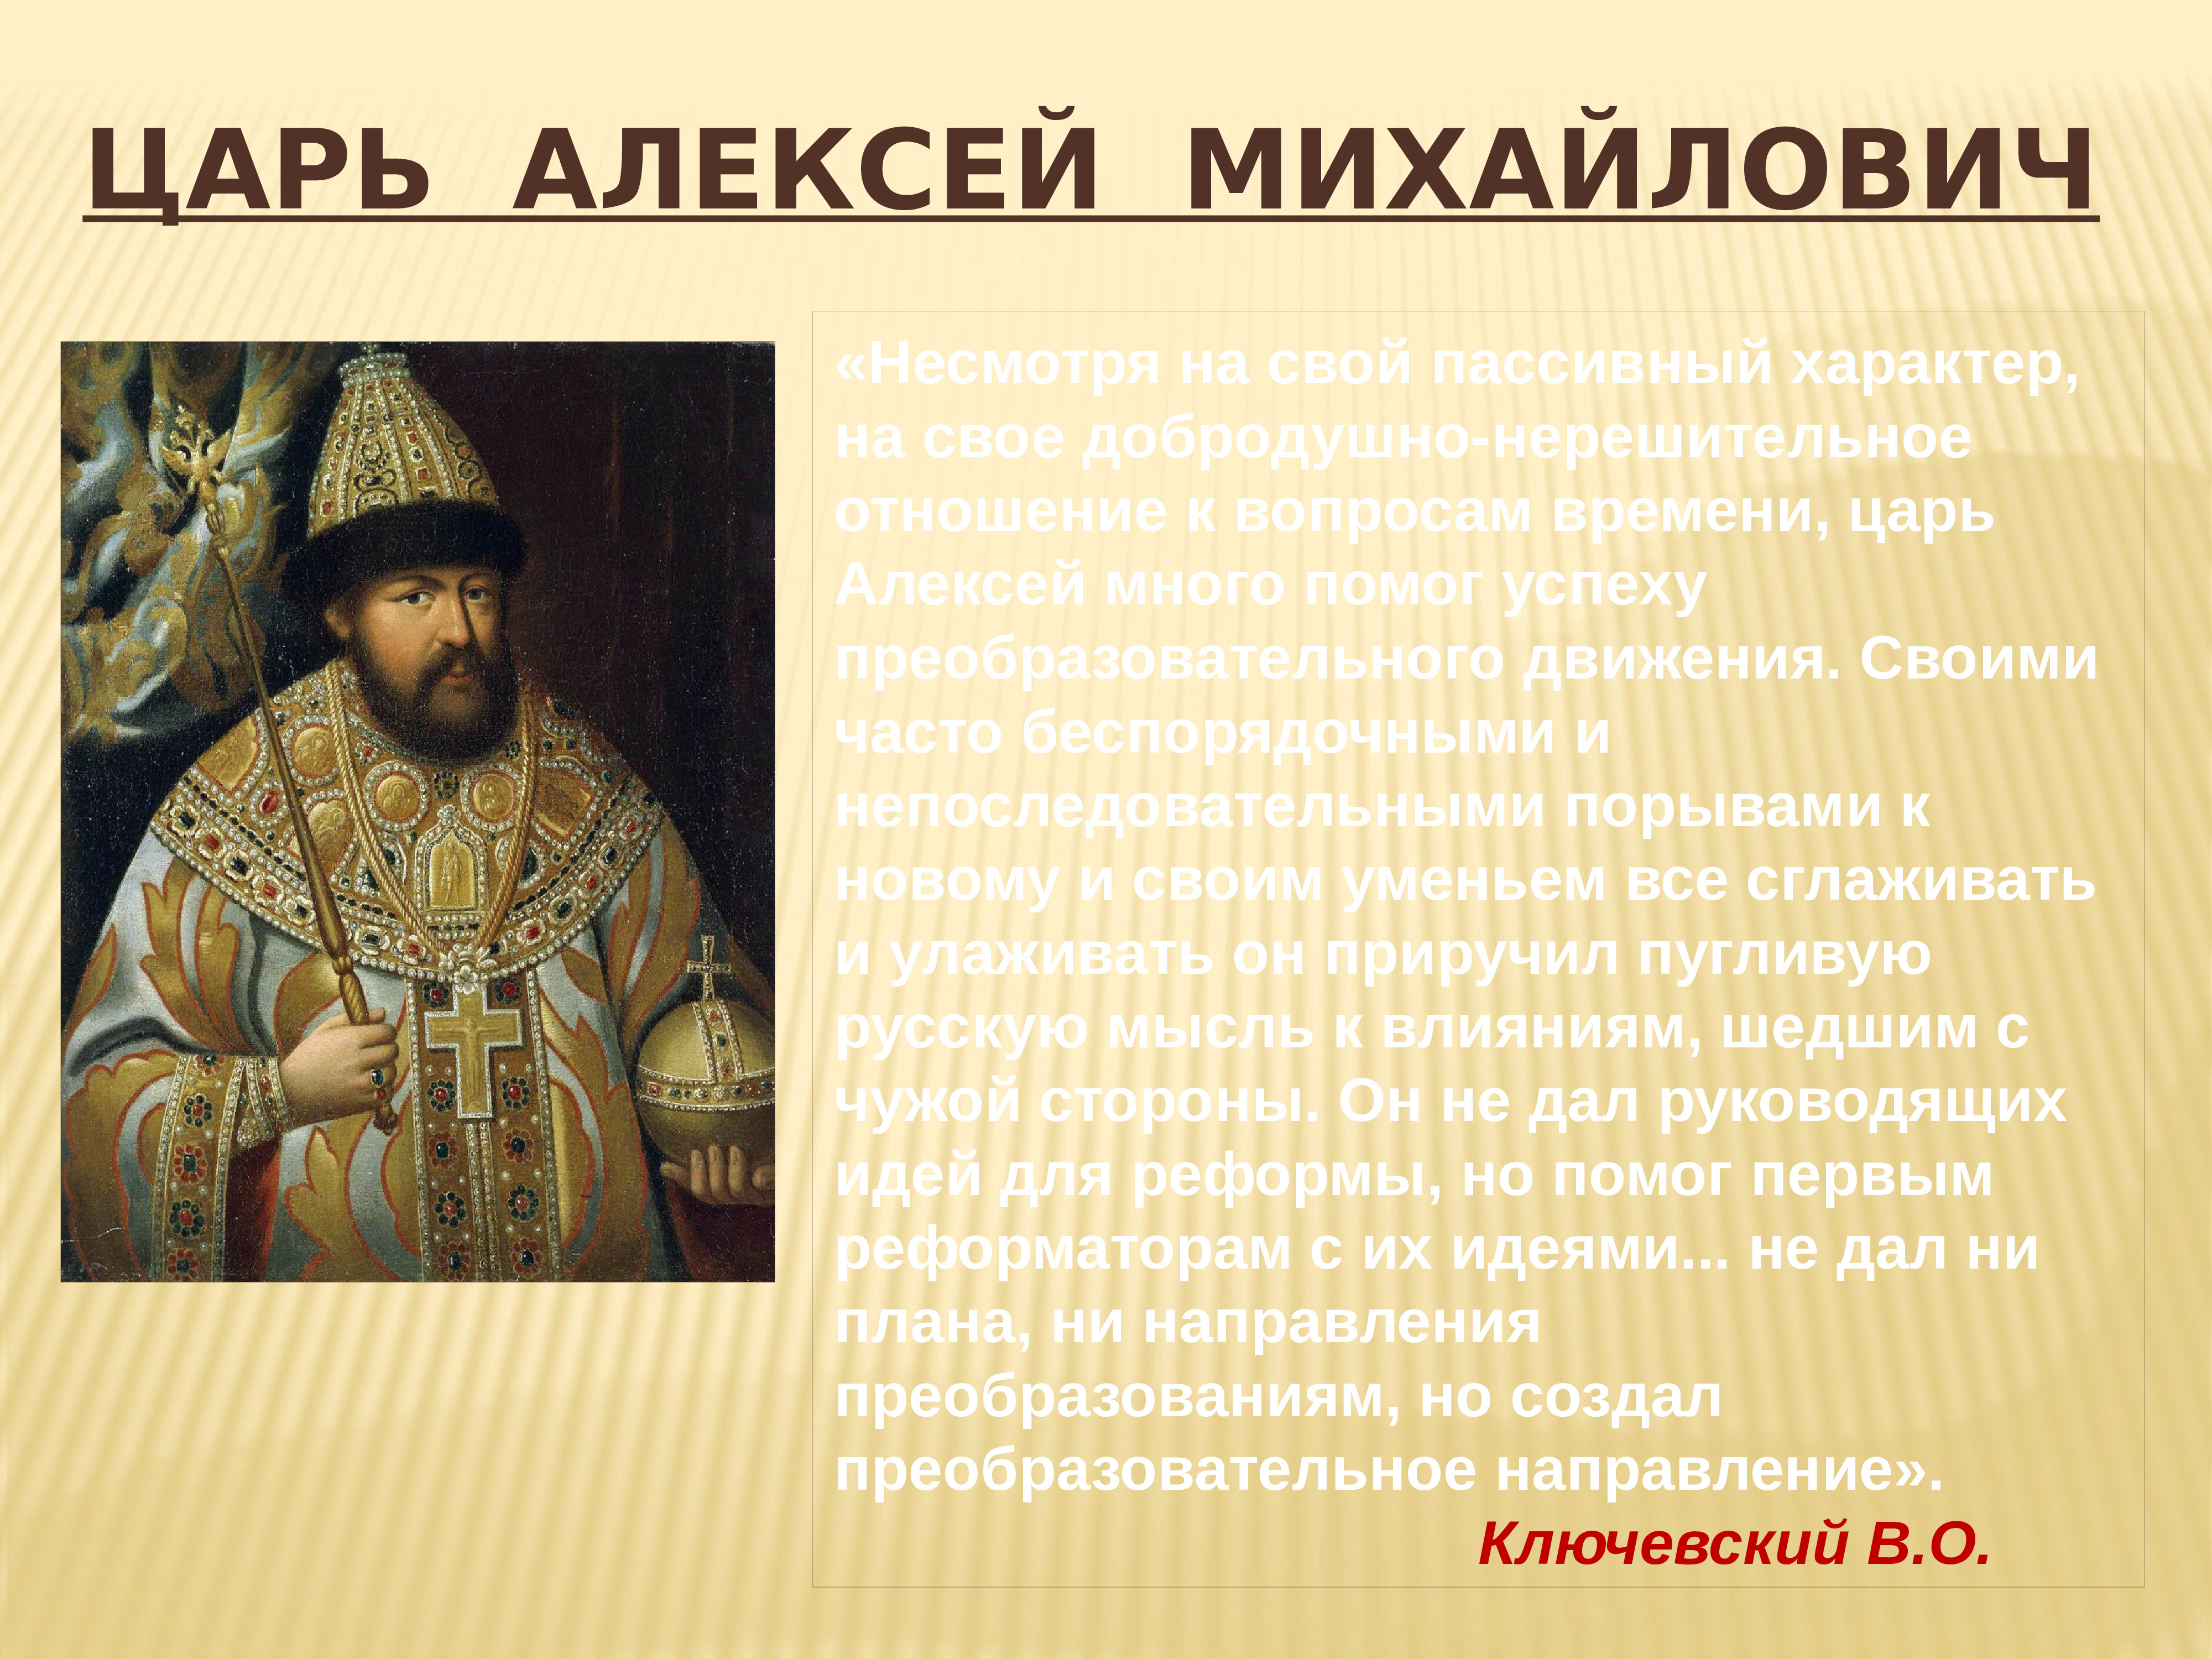 События в годы правления царя алексея михайловича